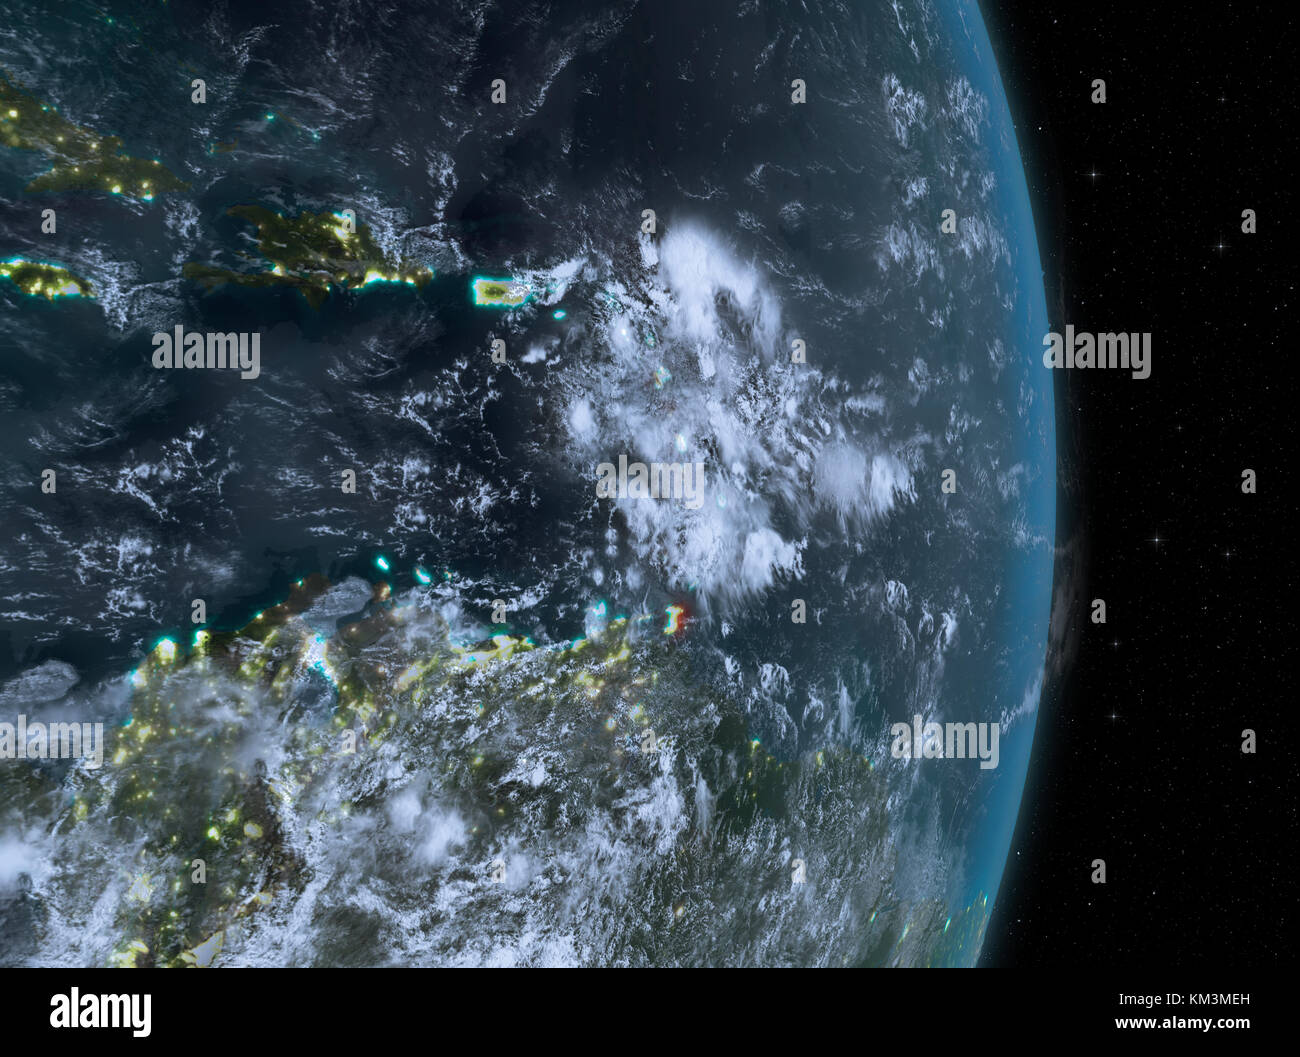 Caraïbes de l'orbite de la planète Terre avec des nuages la nuit avec des textures de surface très détaillées. Illustration 3D. Éléments de cette image fournis par Banque D'Images